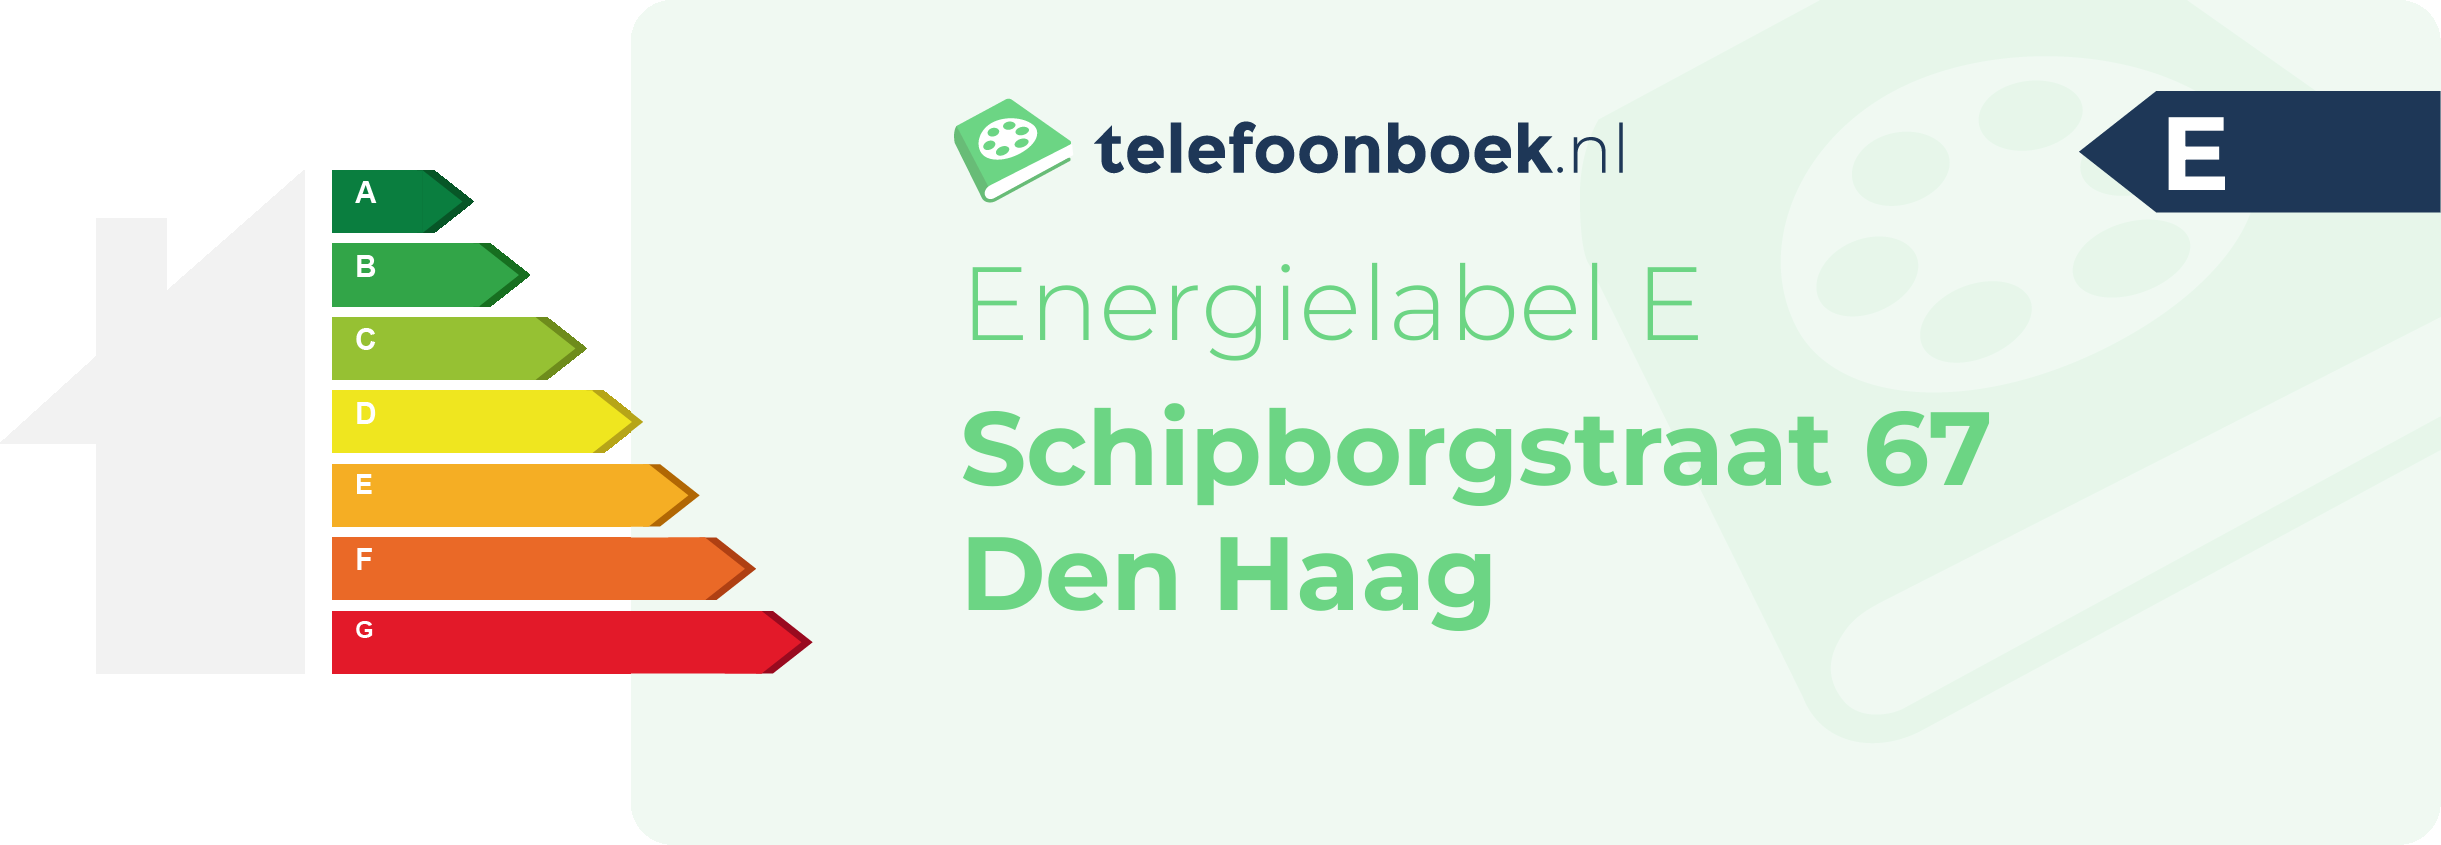 Energielabel Schipborgstraat 67 Den Haag